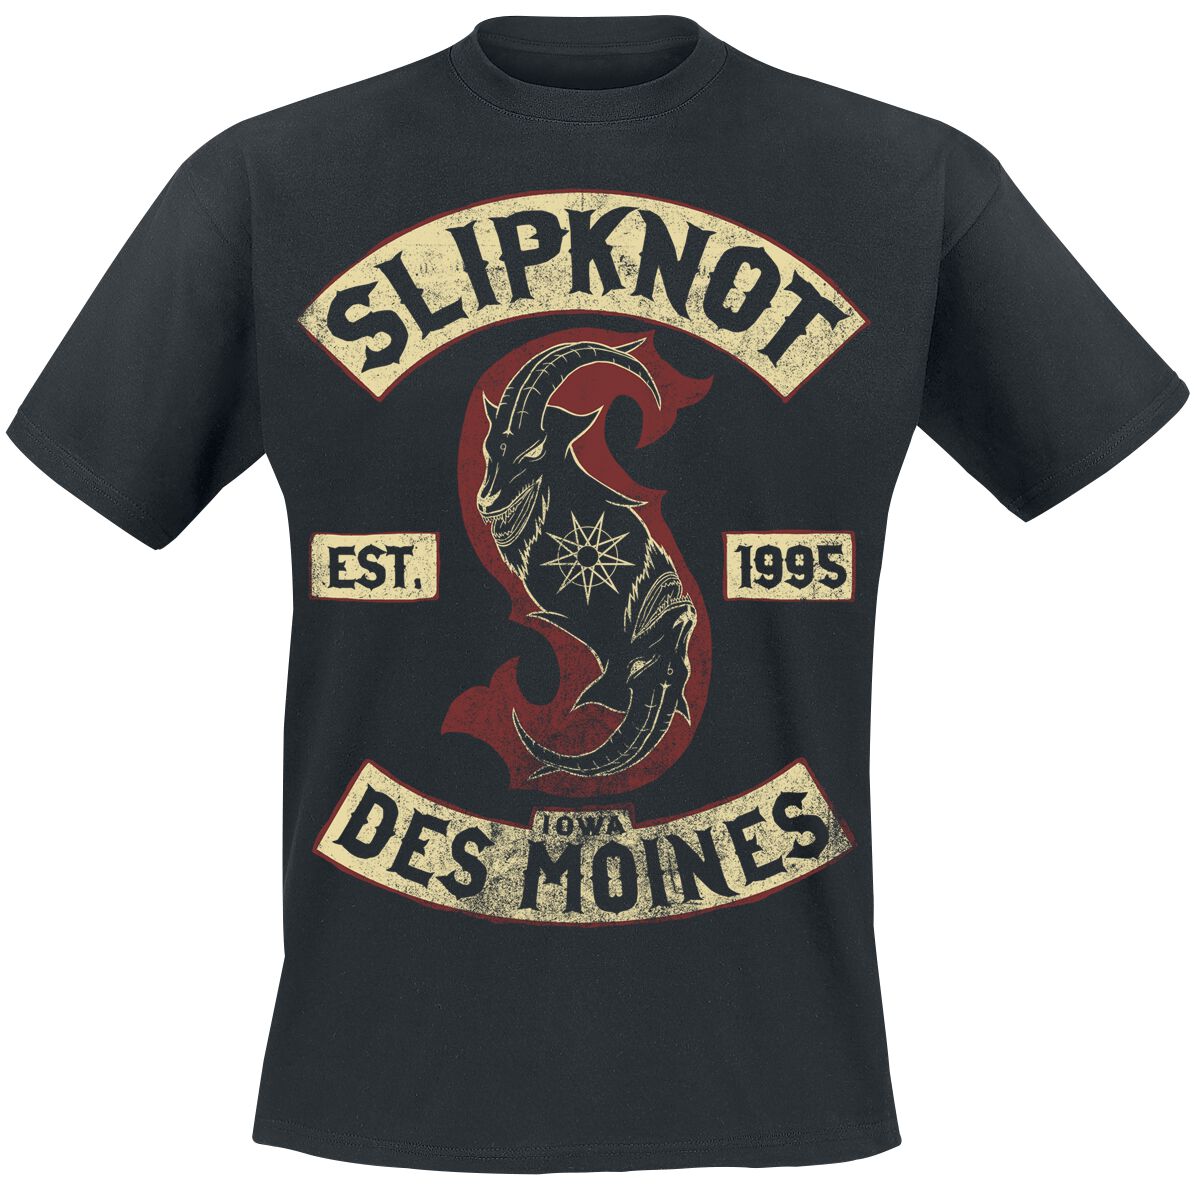 Slipknot T-Shirt - Iowa Des Moines - S bis 3XL - für Männer - Größe XXL - schwarz  - Lizenziertes Merchandise!